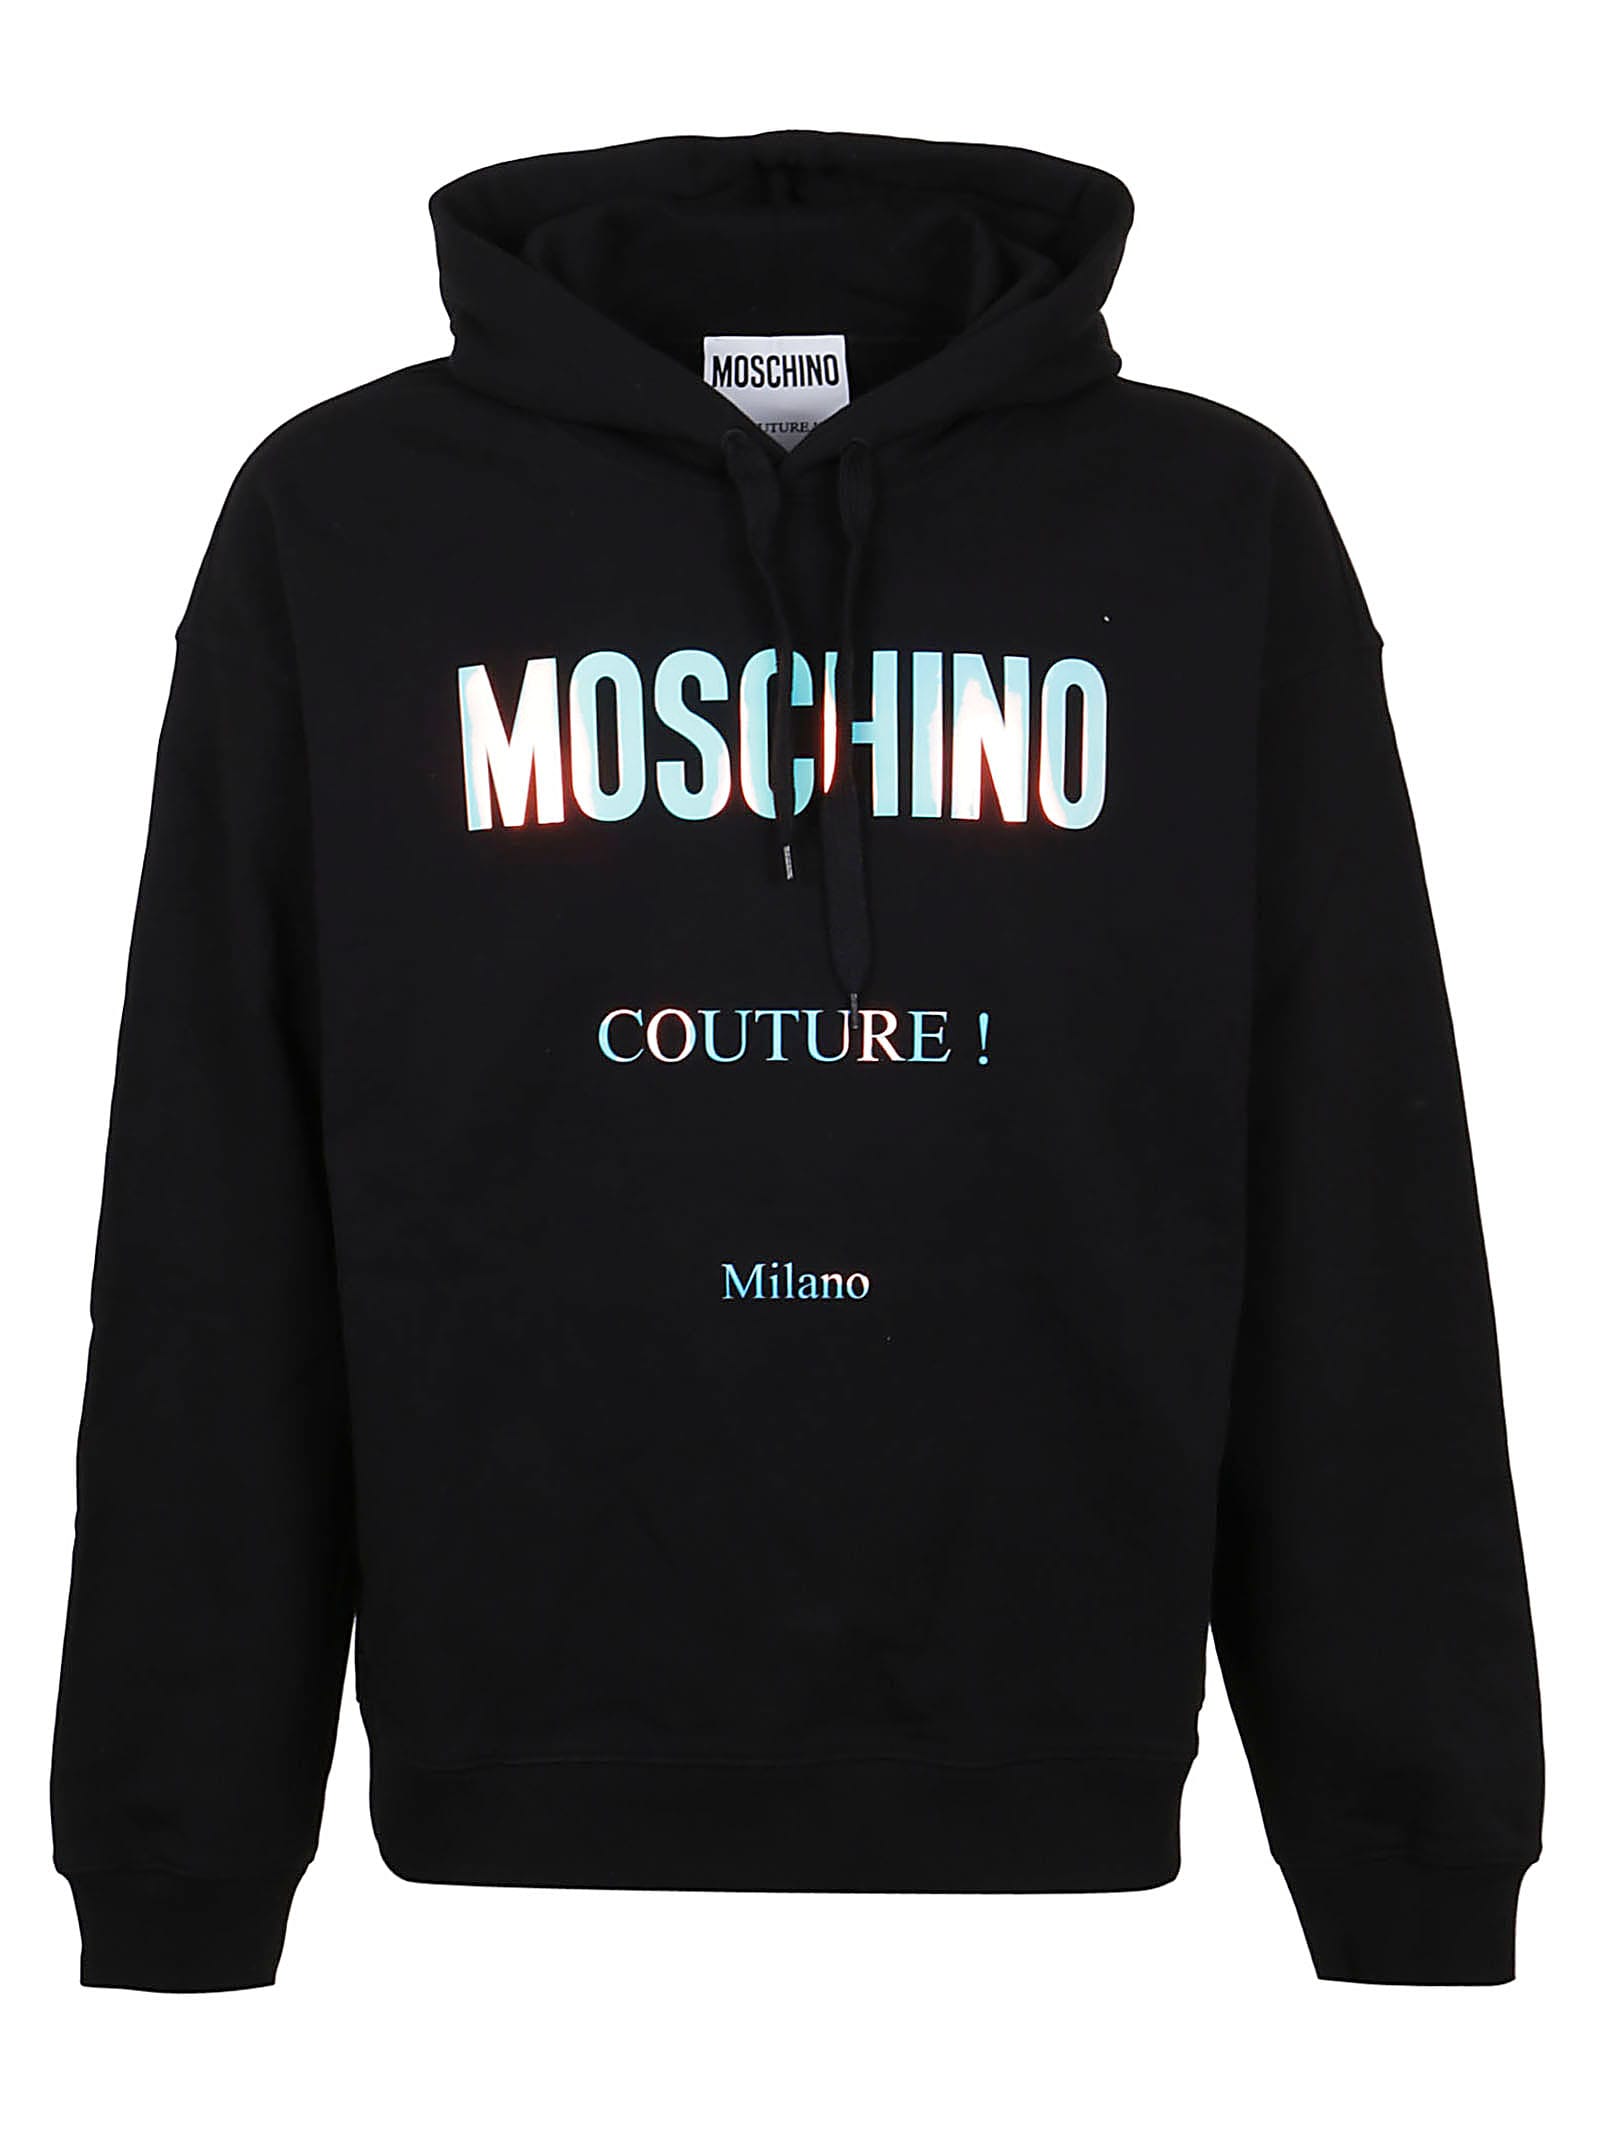 Moschino Couture Milano Hologr Sweatshirt